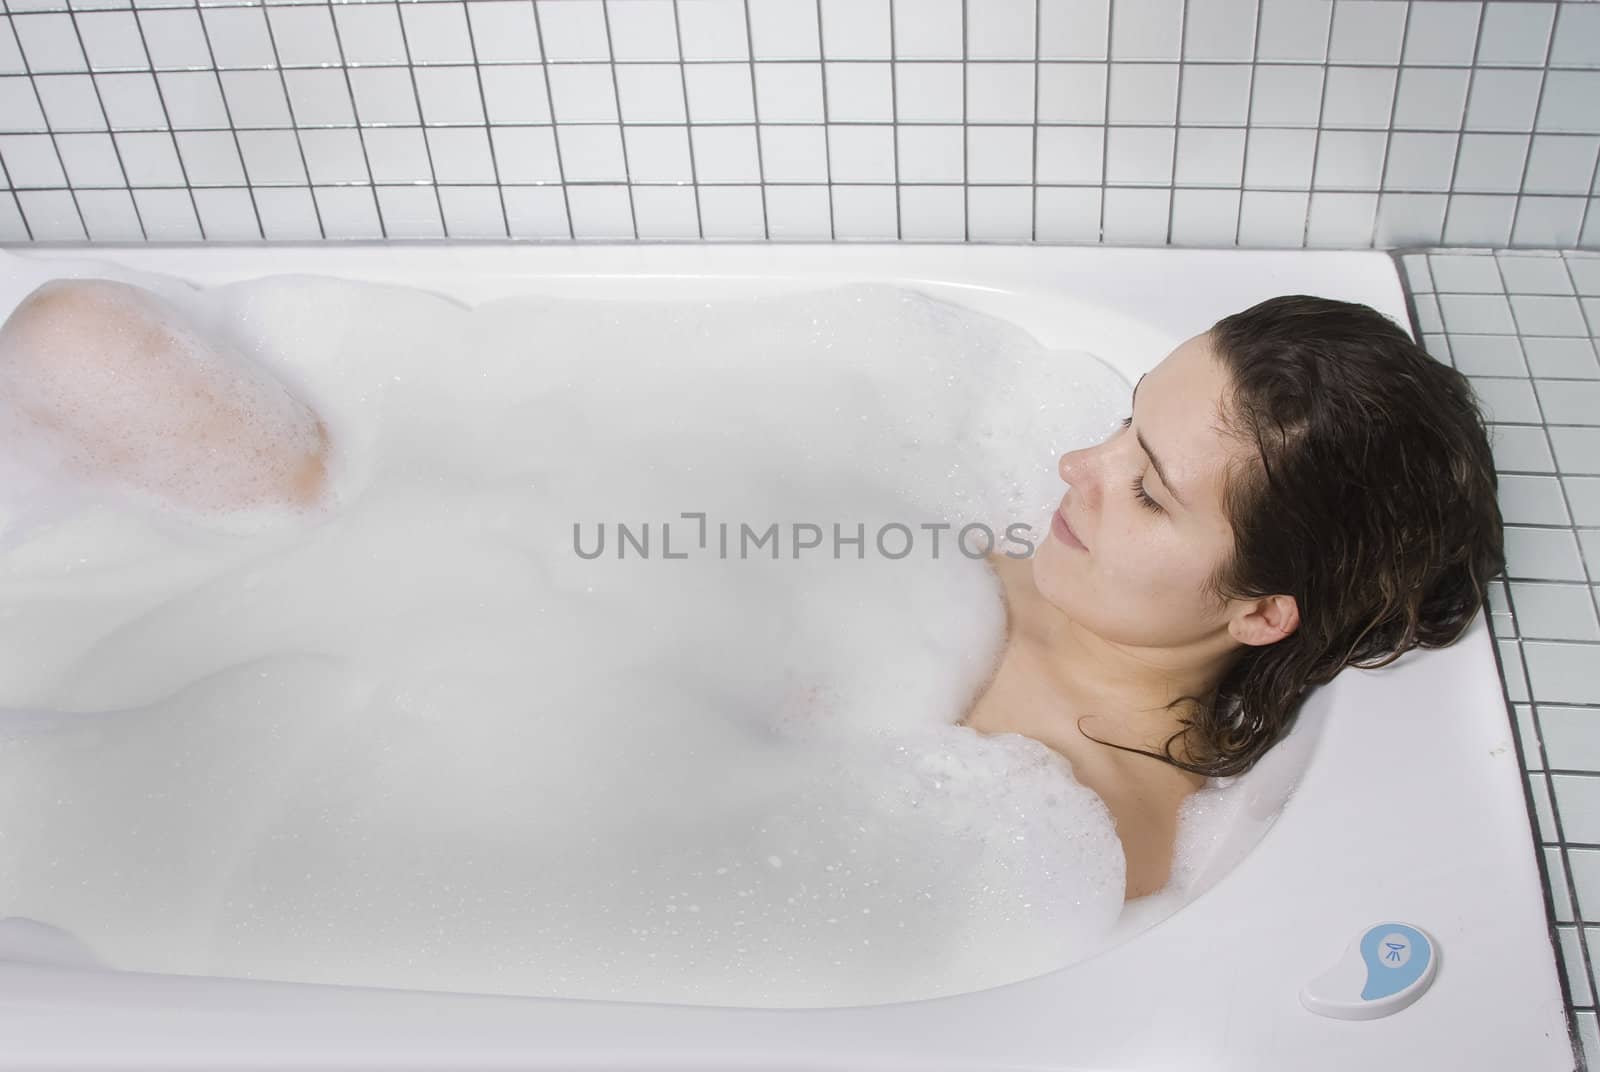  woman enjoys the bubble-bath by jfcalheiros